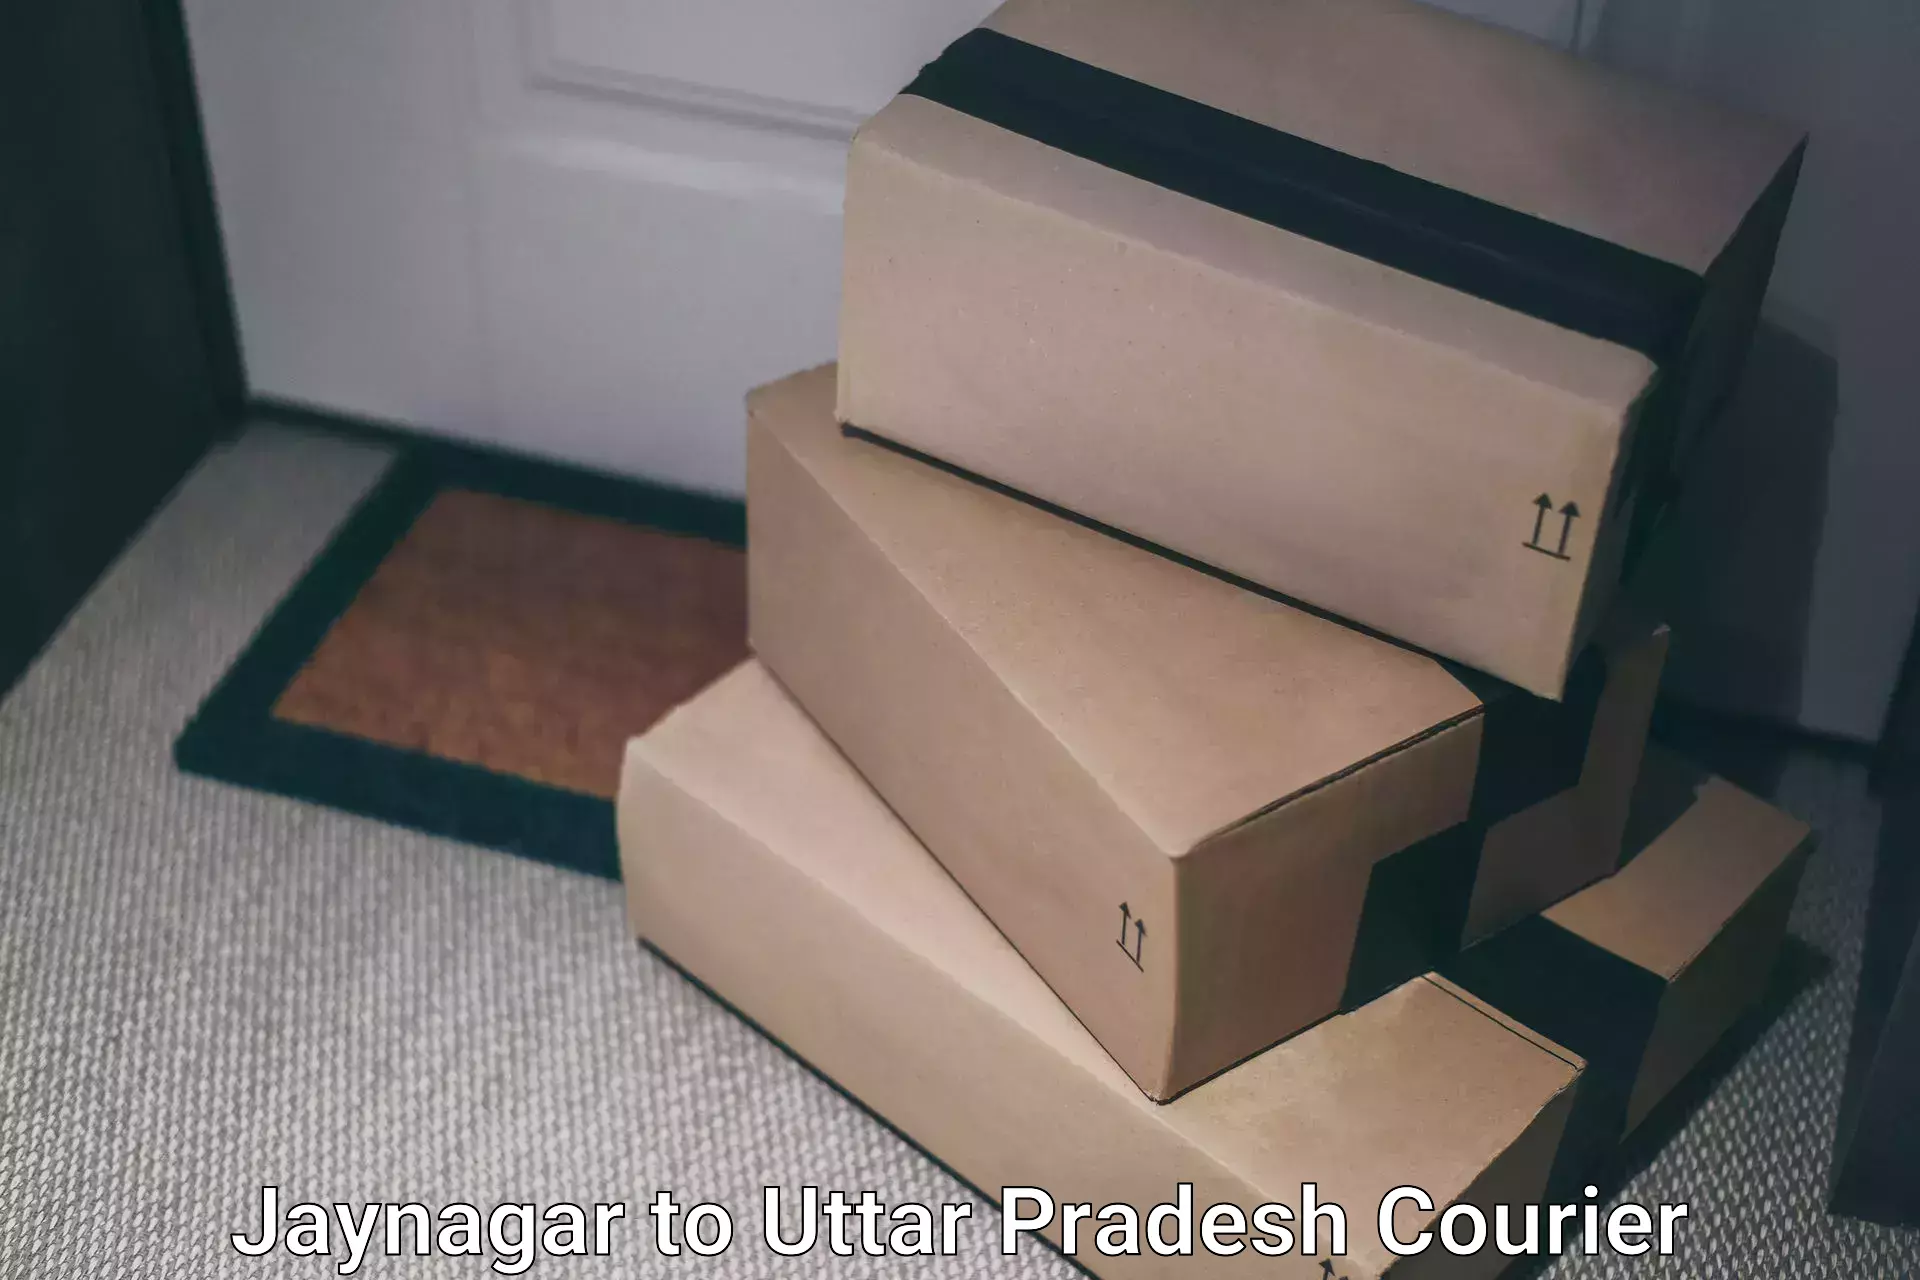 24/7 courier service Jaynagar to Lakhimpur Kheri